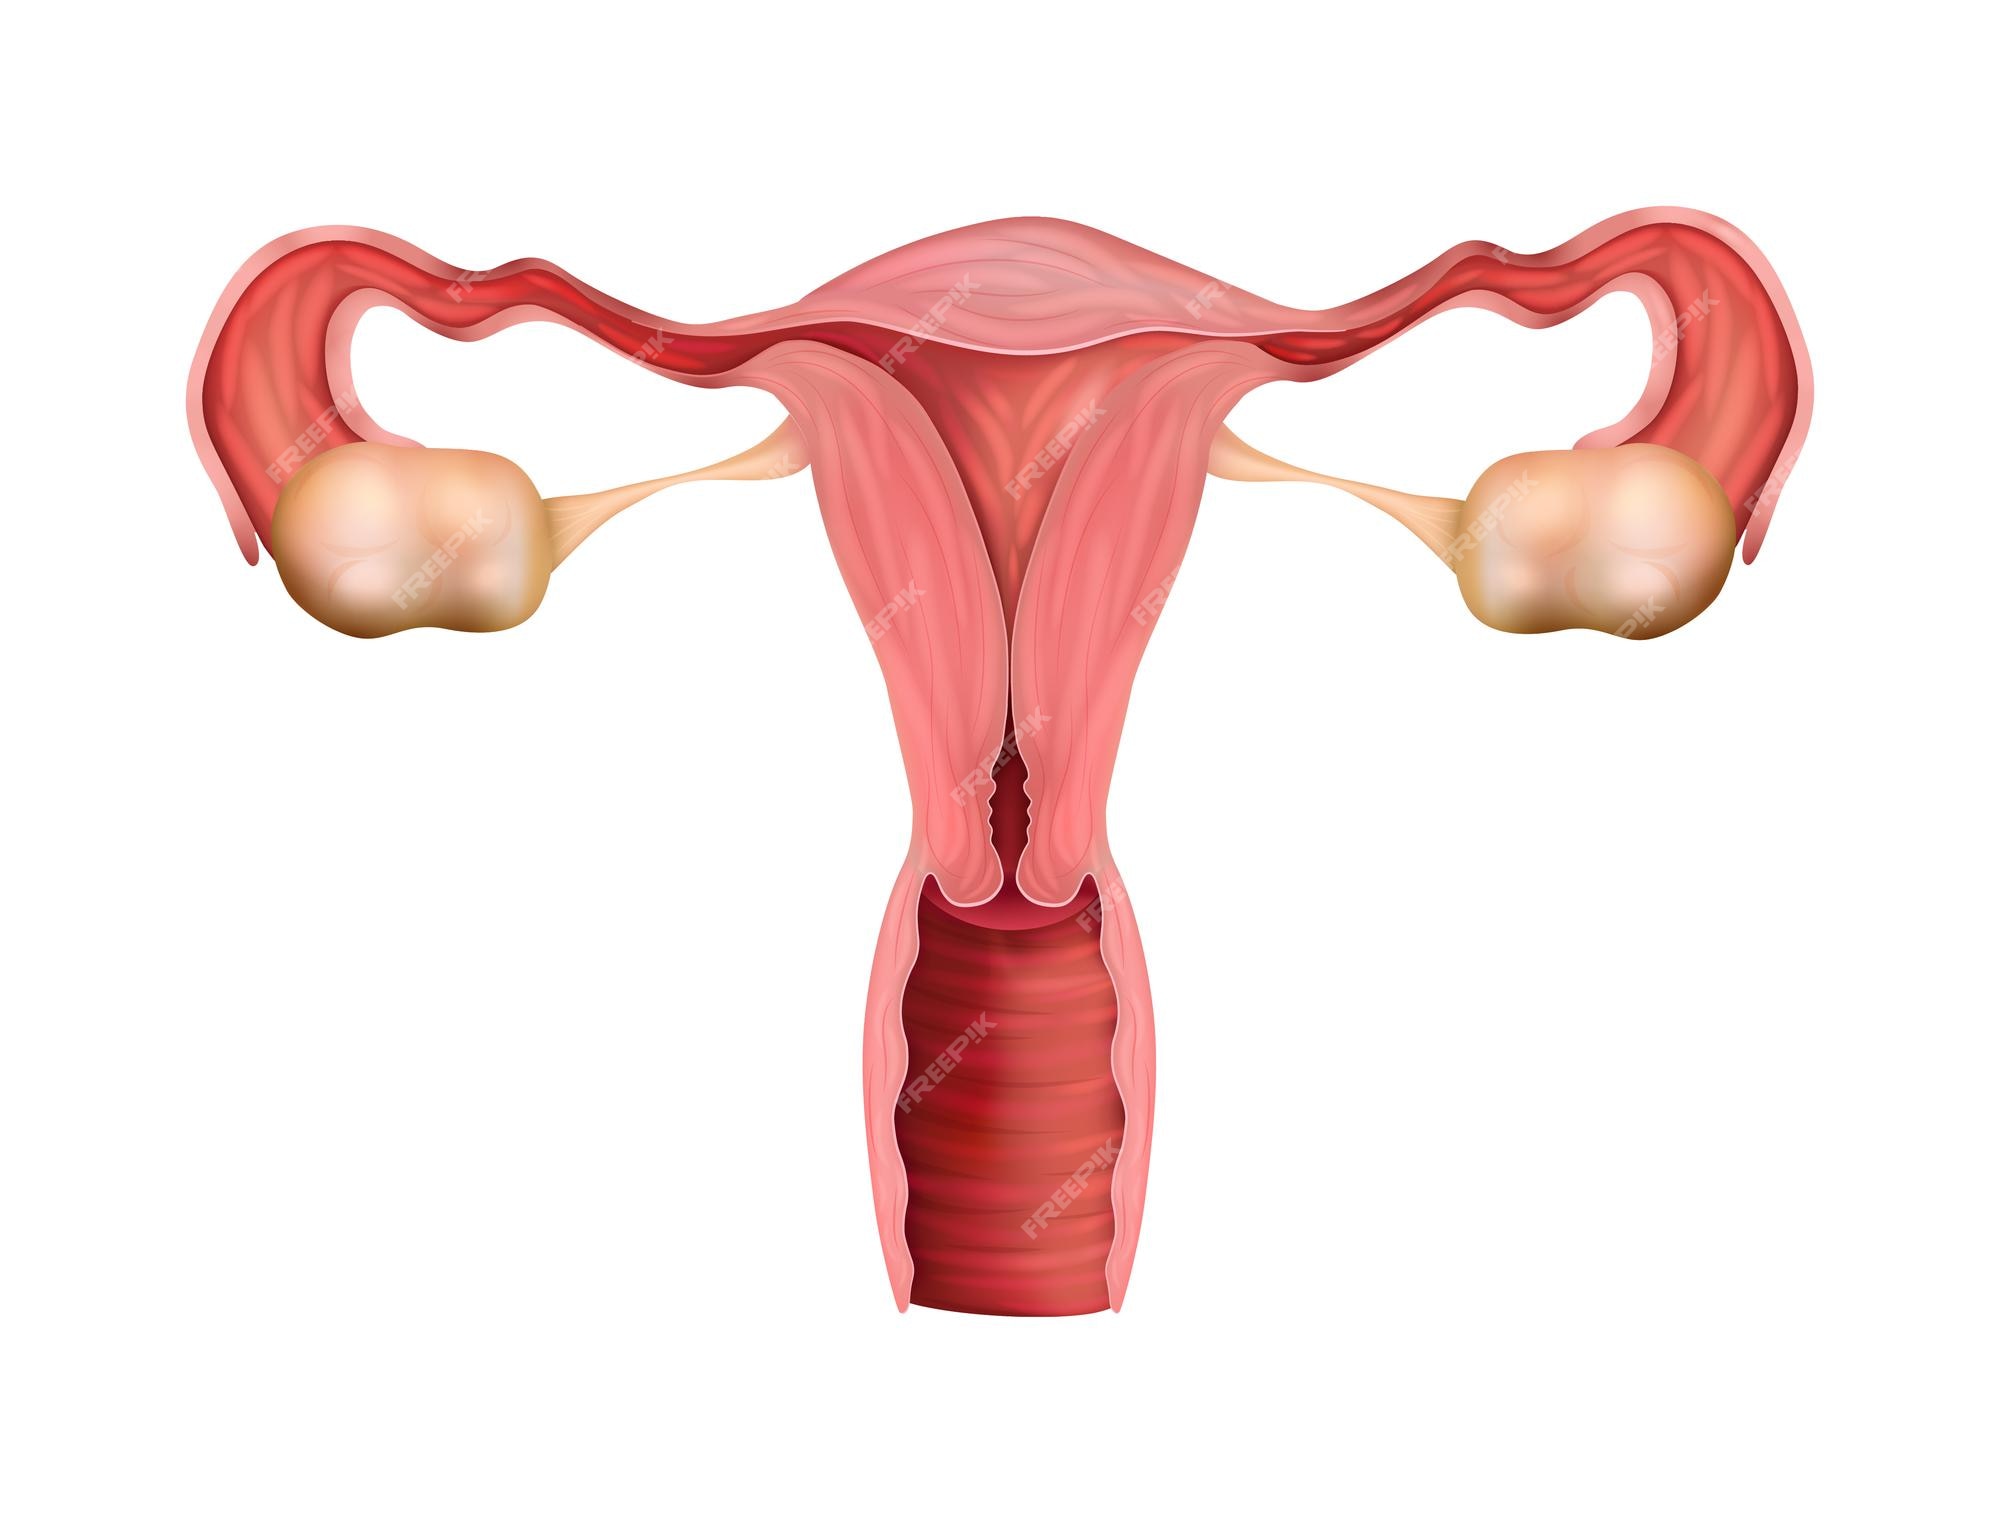 Composição Realista Da Anatomia Do Sistema Reprodutivo Humano Dos órgãos Genitais Femininos Com 3708